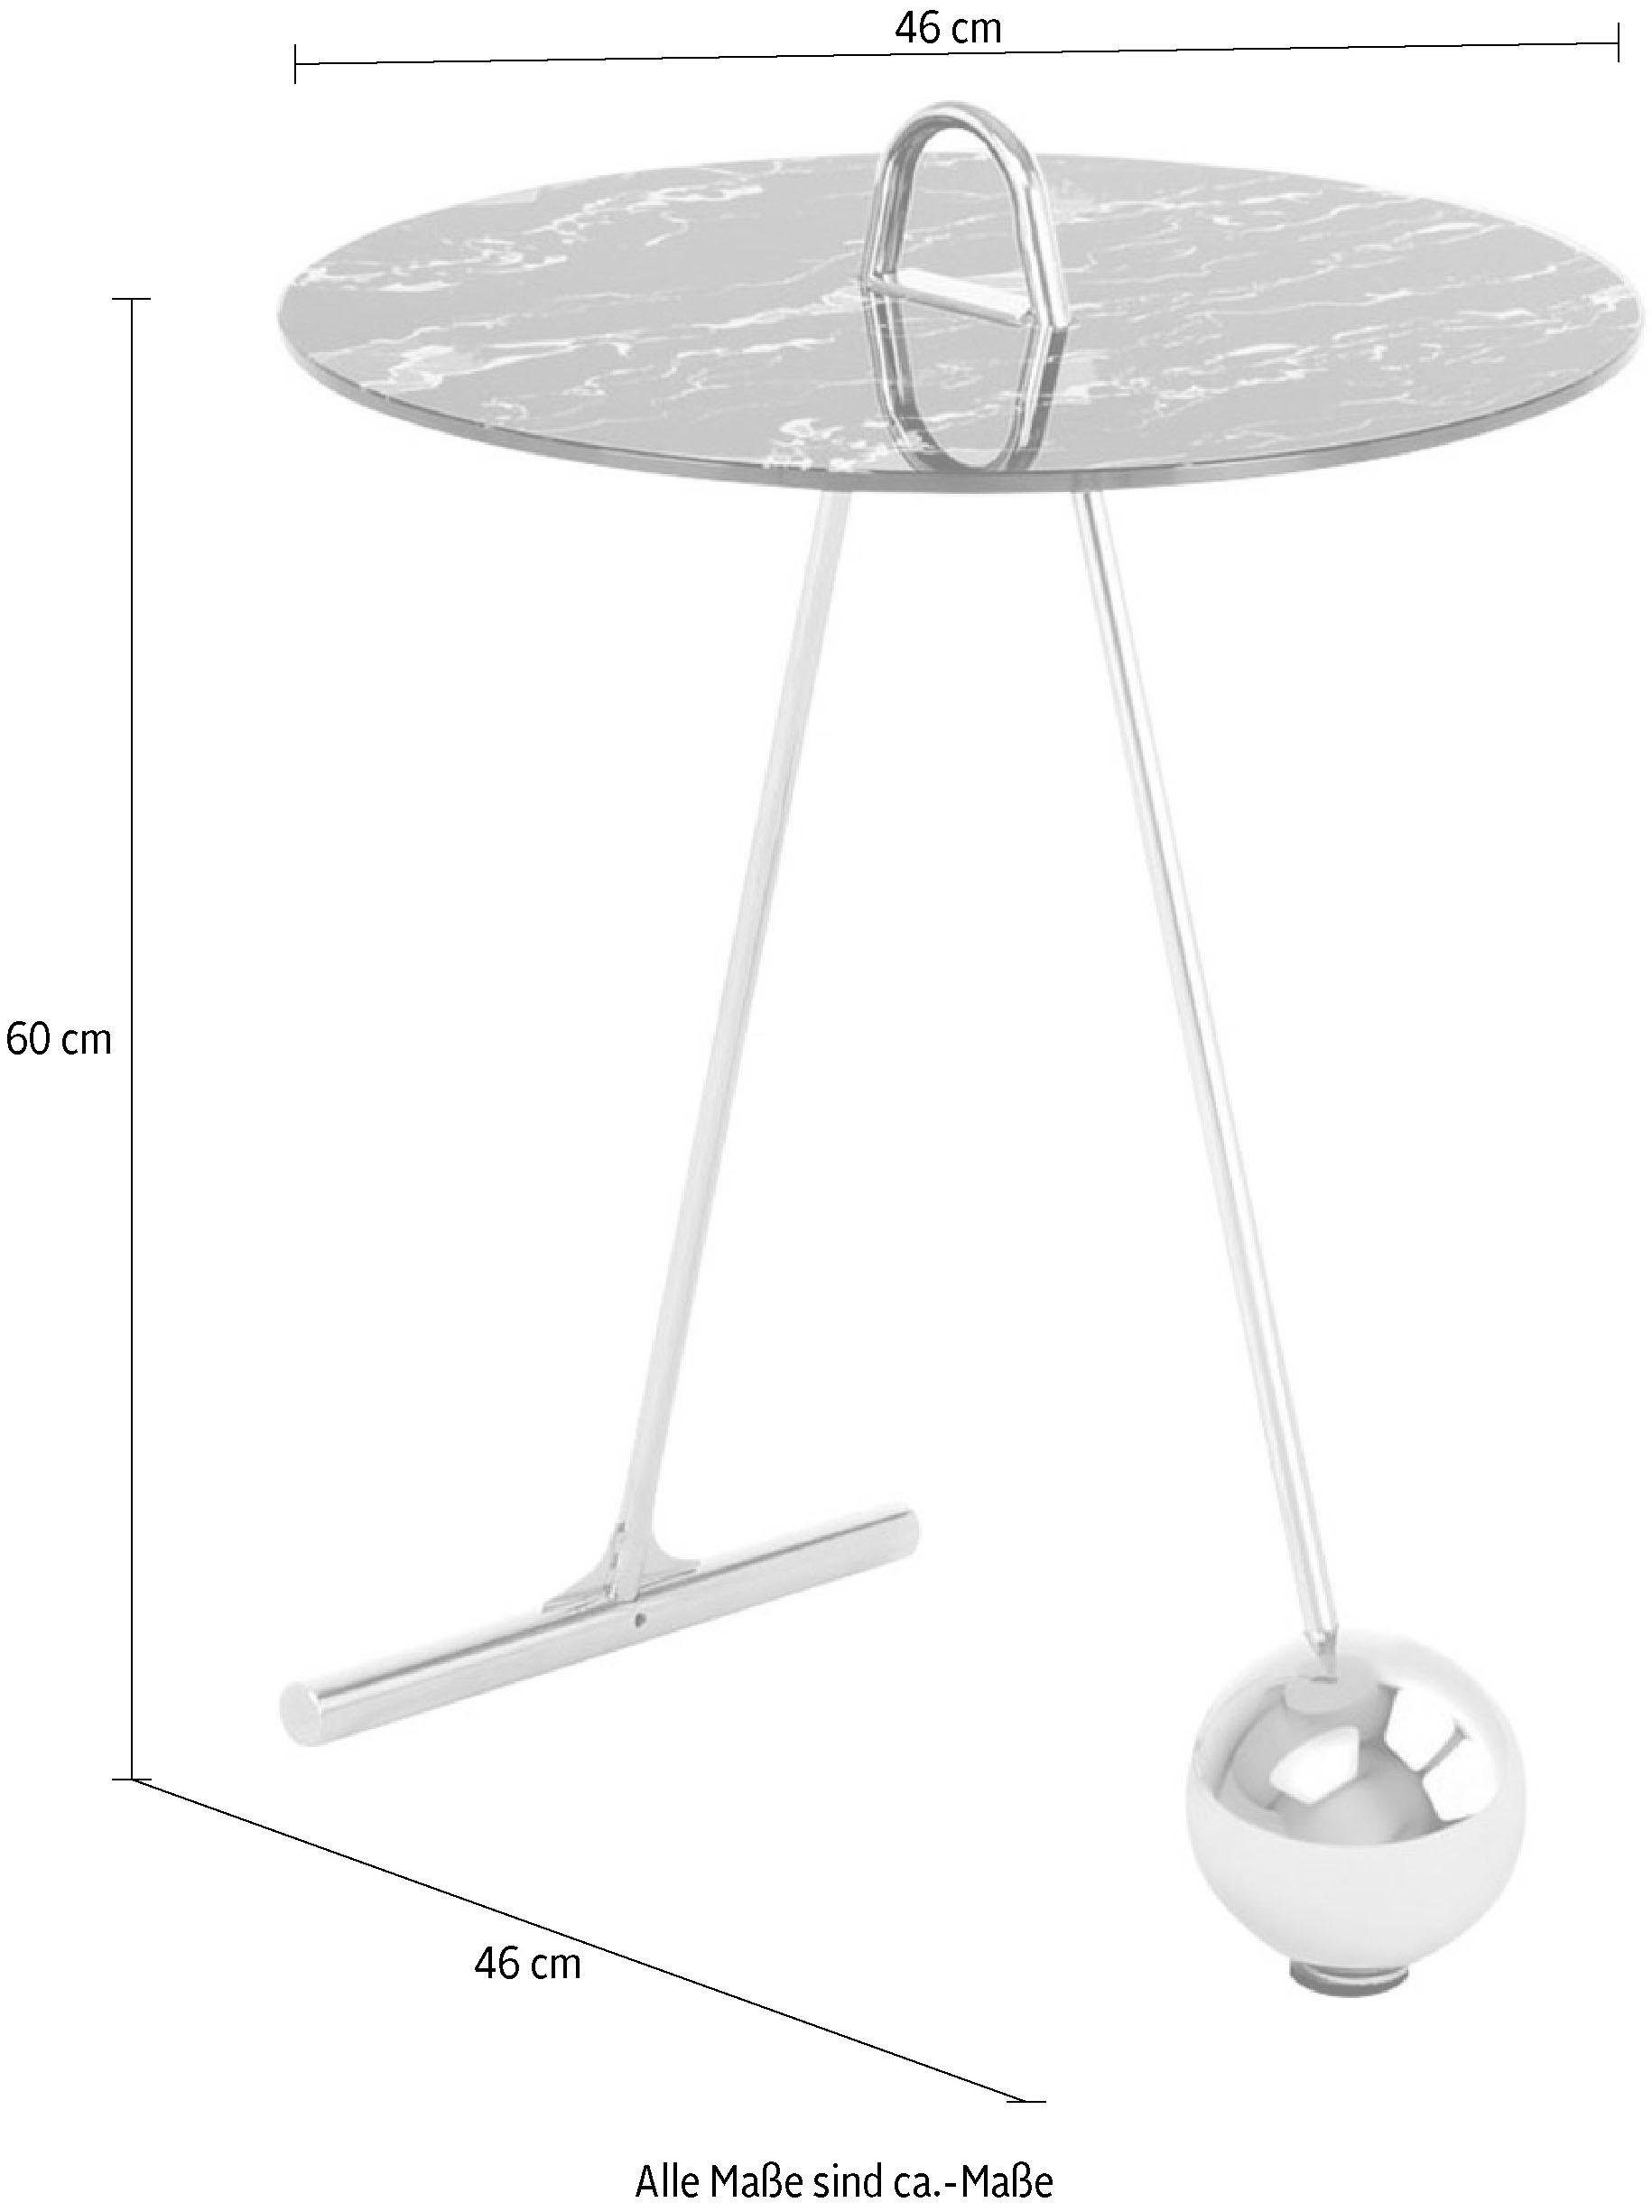 Kayoom Beistelltisch Pendulum 525, Marmoroptik, tragbar Schwarz im Silber / Gestell Pendel-Design, praktisch